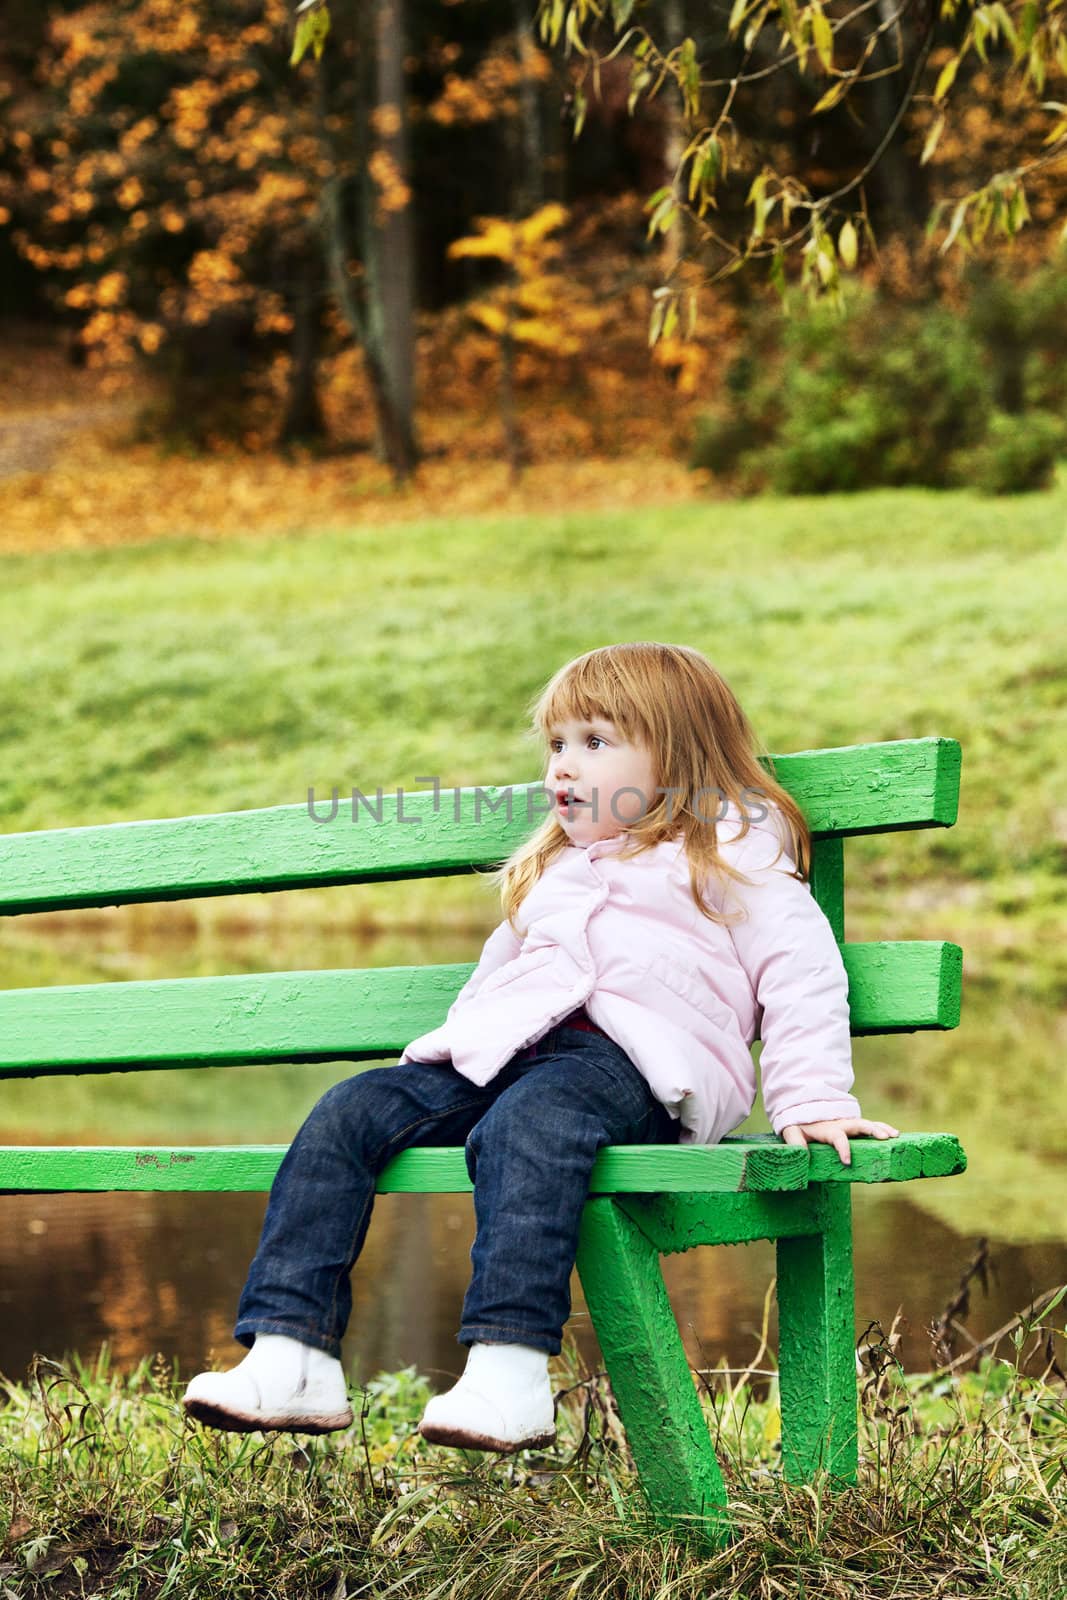 Beautiful Girl in Park by petr_malyshev